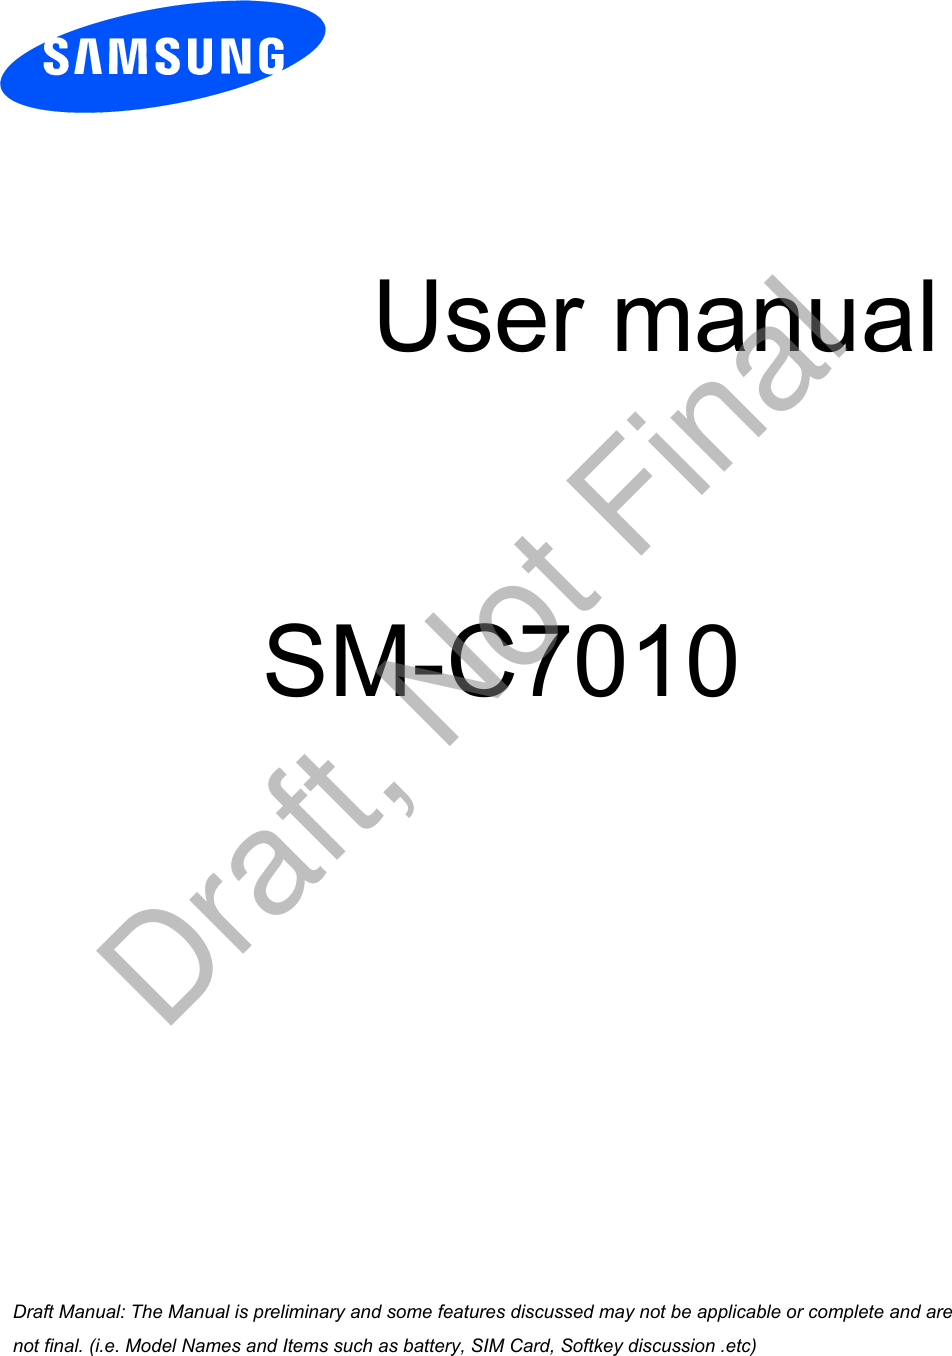 User manualSM-C7010a ana  ana  na and  a dd a n  aa   and a n na  d a and   a a  ad  dn Draft, Not Final